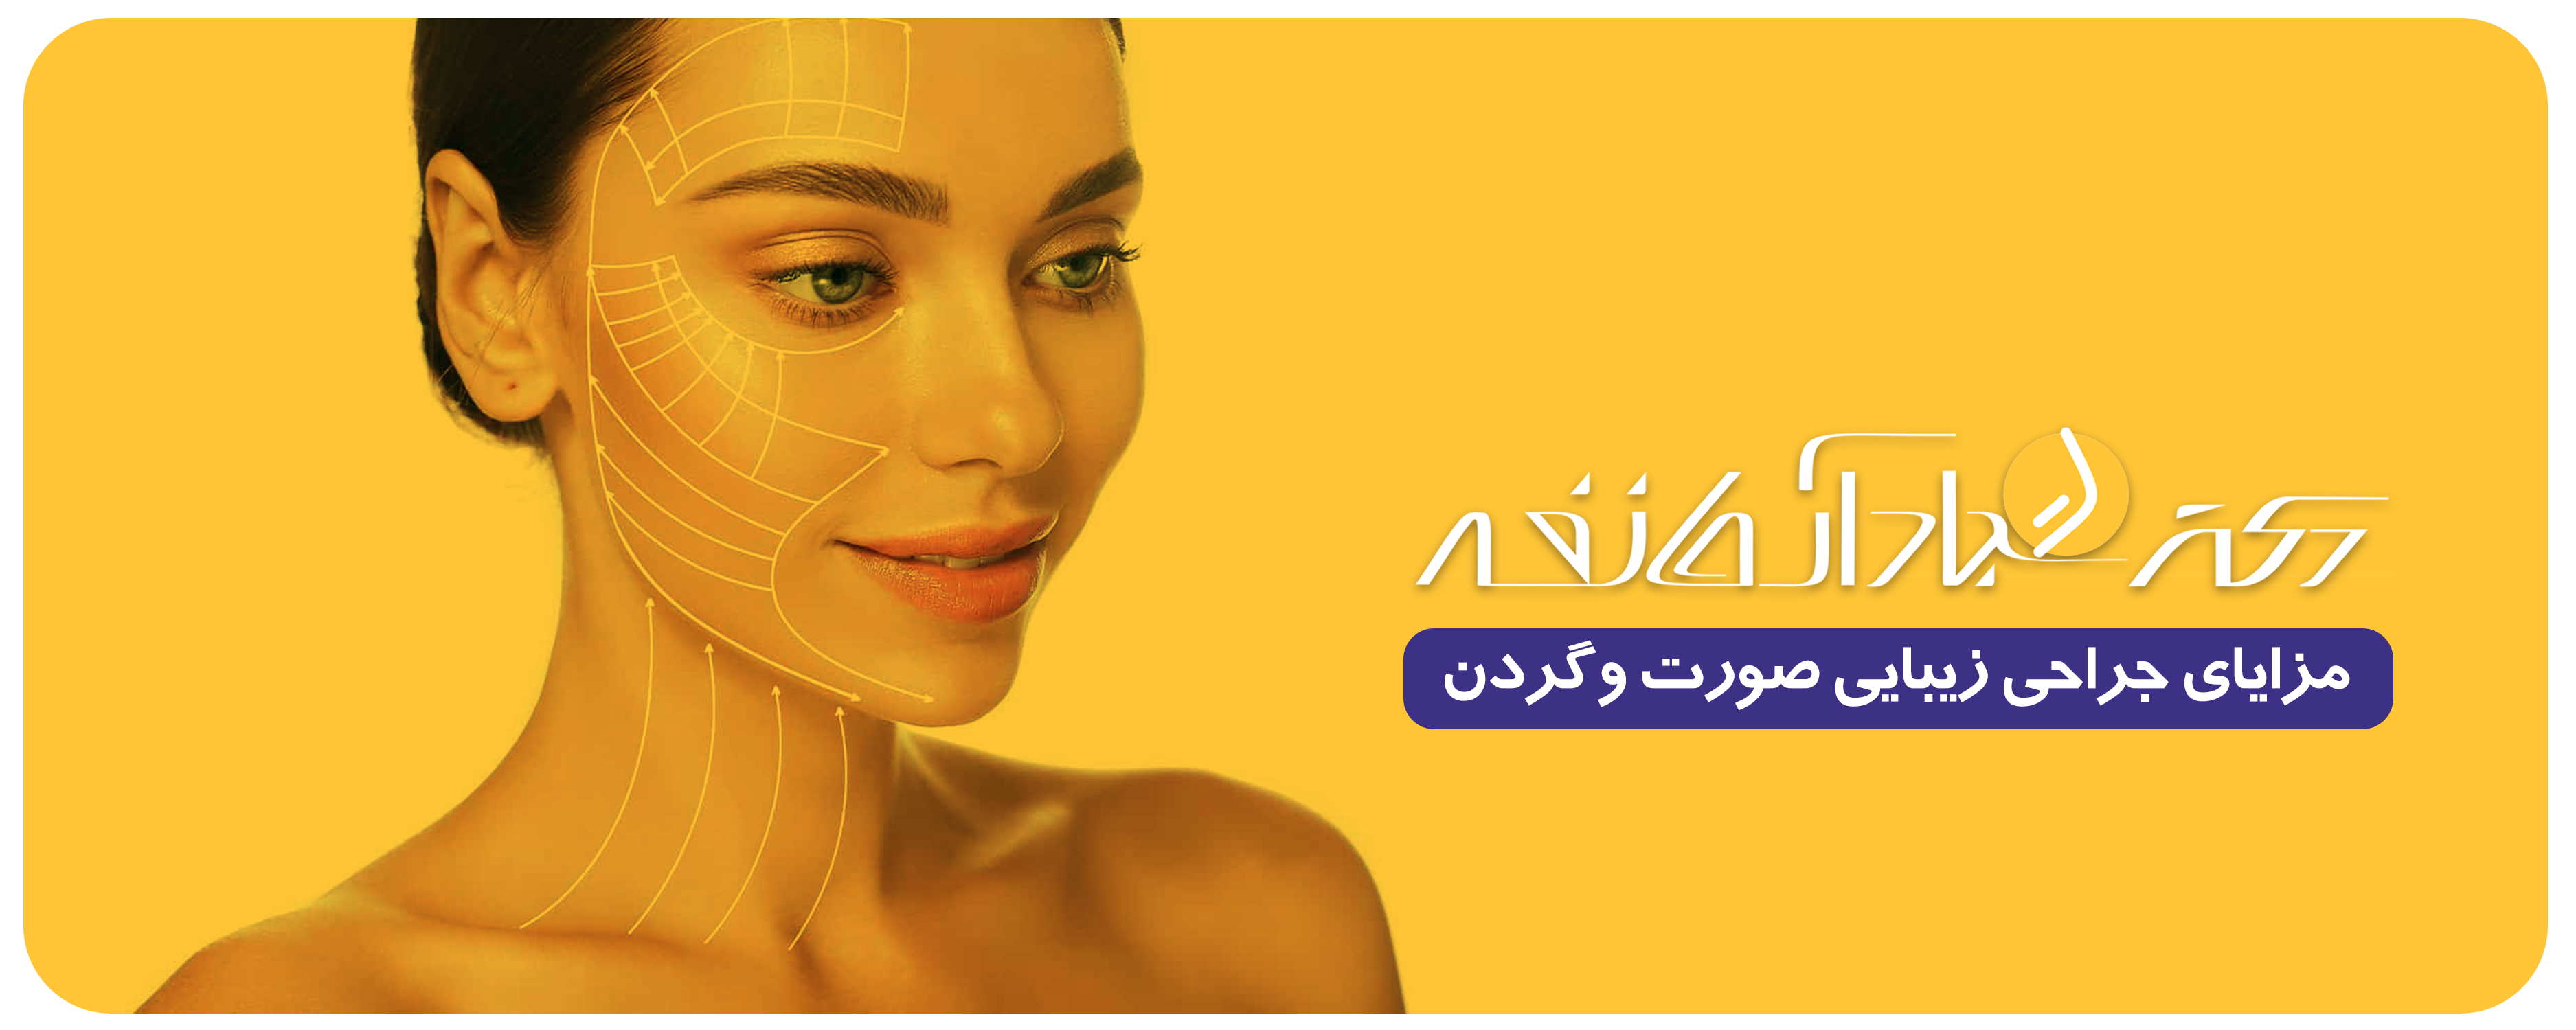 جراحی زیبایی صورت و گردن در اصفهان - کلینیک دکتر آرمان فر